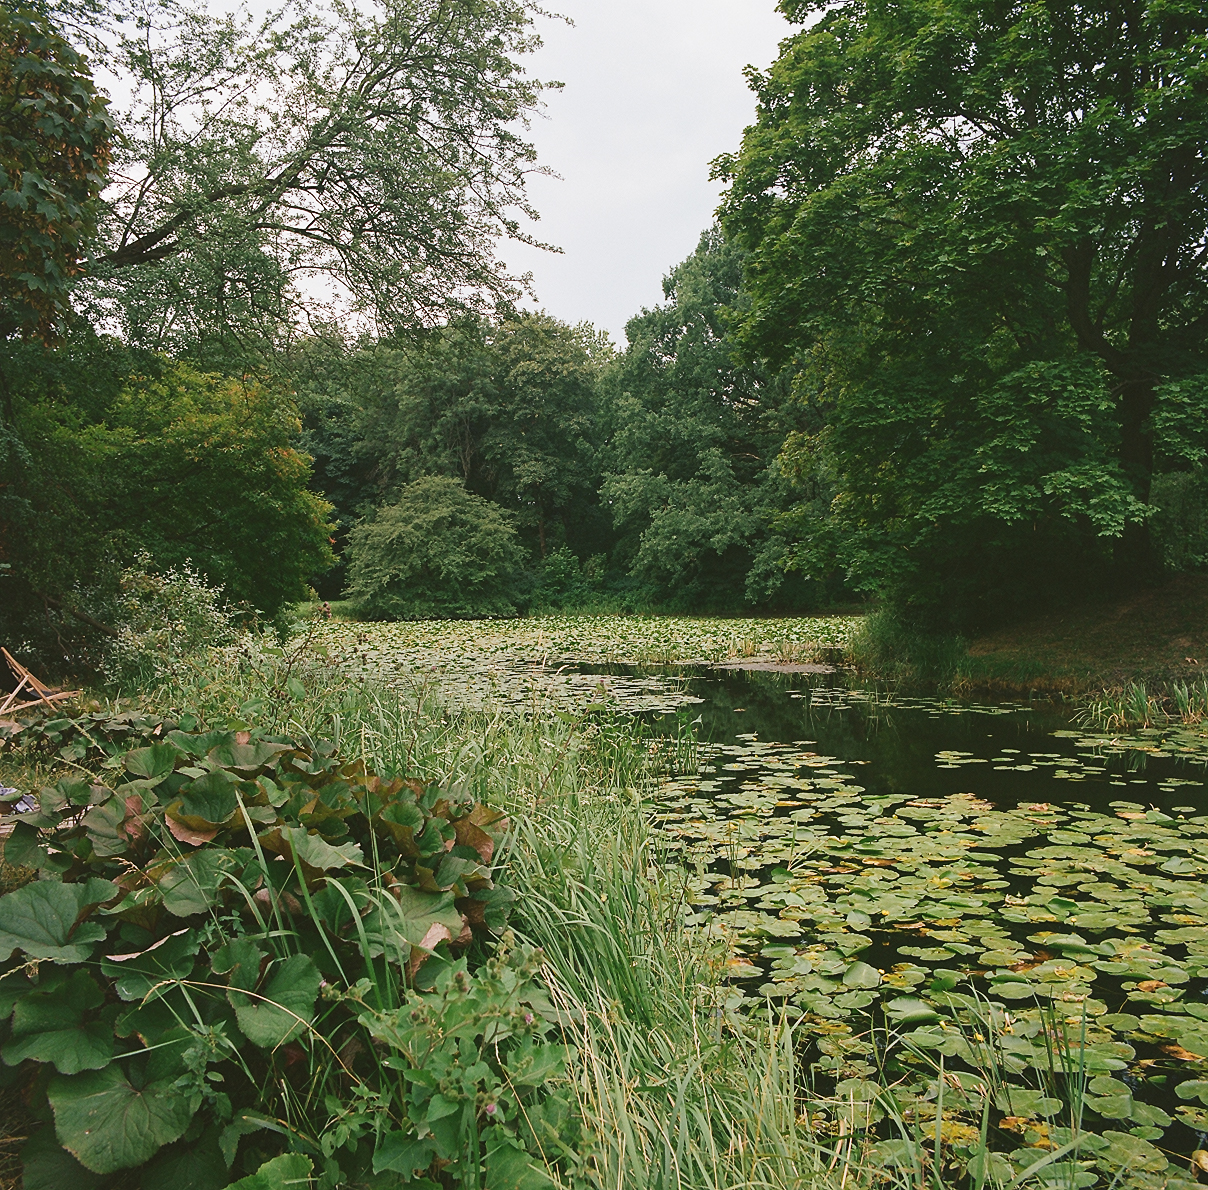 Jezioro Kamionkowskie, jedno z najzdrowszych siedlisk roślinności szuwarowo-trzcinowej i wodnej w Warszawie. Warto stąd pobrać trochę wody podczas zakładania sadzawki, by z nią przenieść mikrokosmos stworzeń, gwarantów ogrodniczego sukcesu.